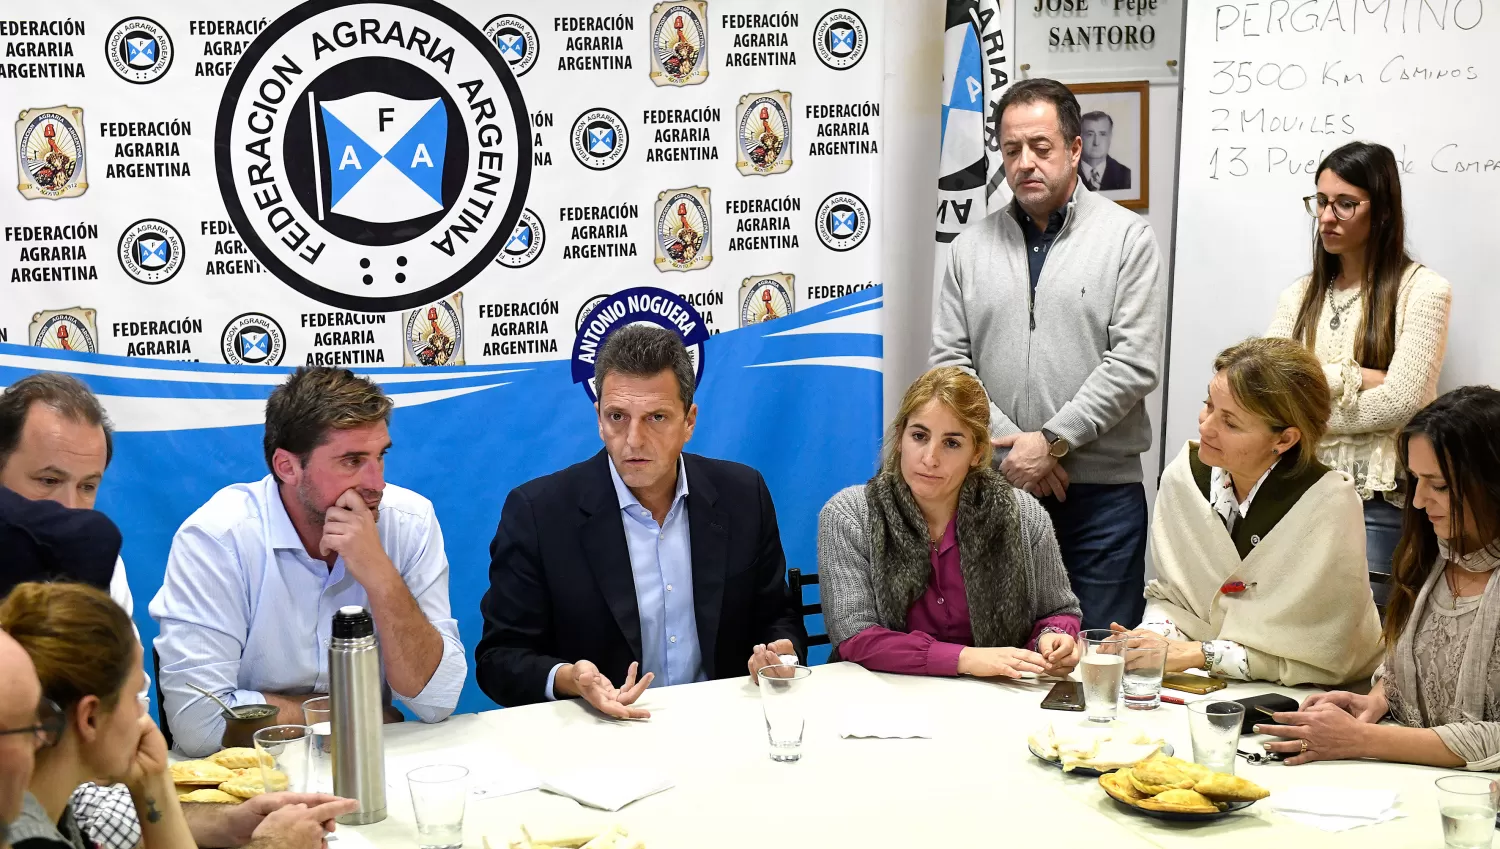 CONVITE. Massa mantuvo un encuentro con integrantes de la Federación Agraria Argentina, en Pergamino. TÉLAM